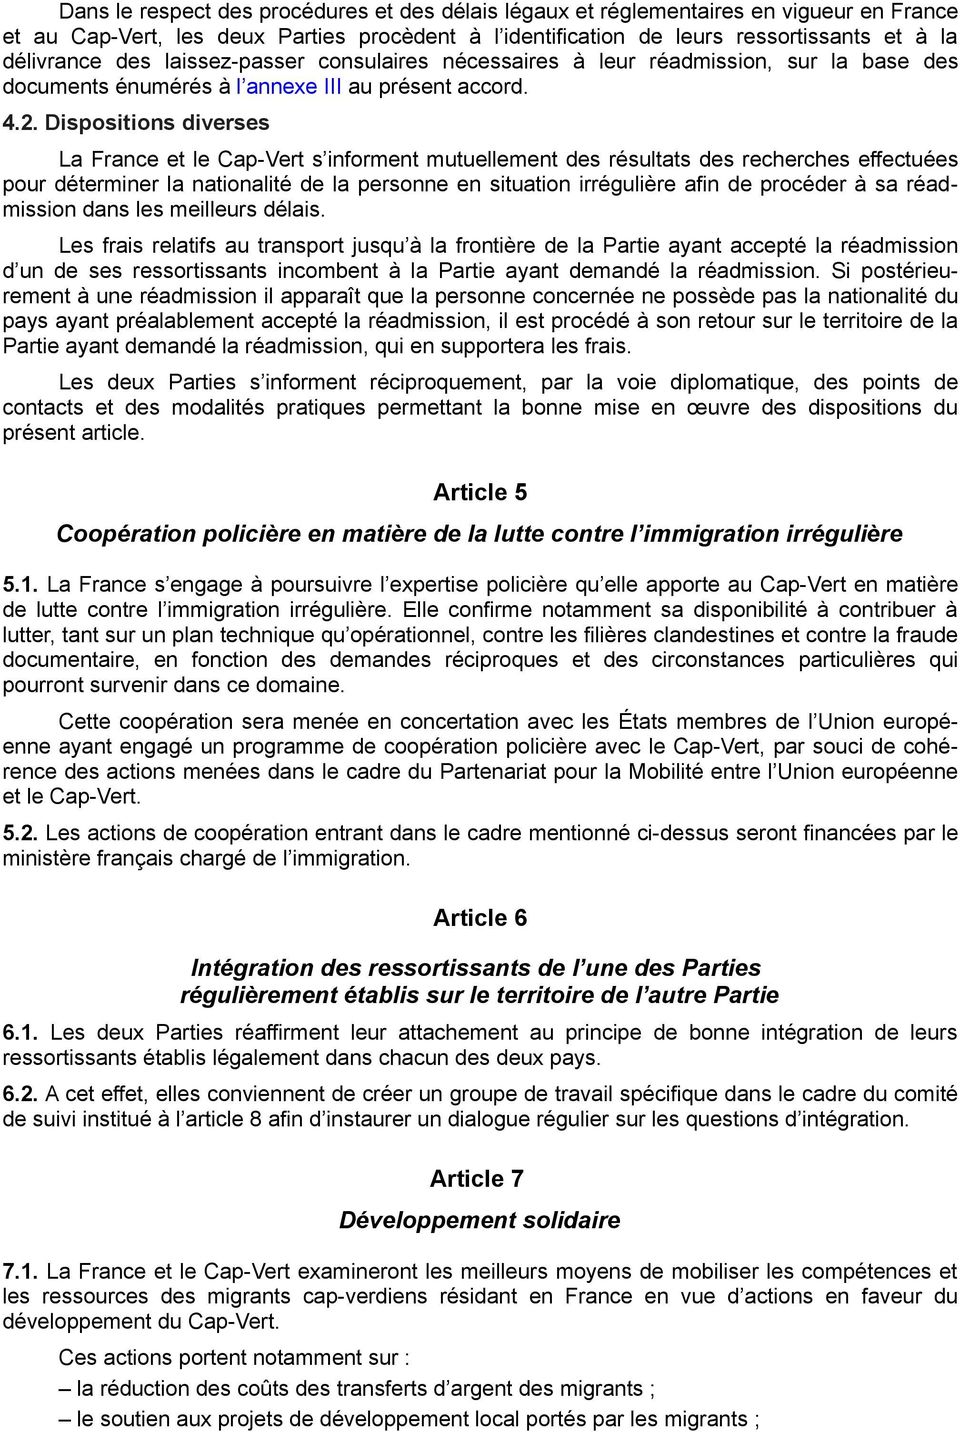 Dispositions diverses La France et le Cap-Vert s informent mutuellement des résultats des recherches effectuées pour déterminer la nationalité de la personne en situation irrégulière afin de procéder